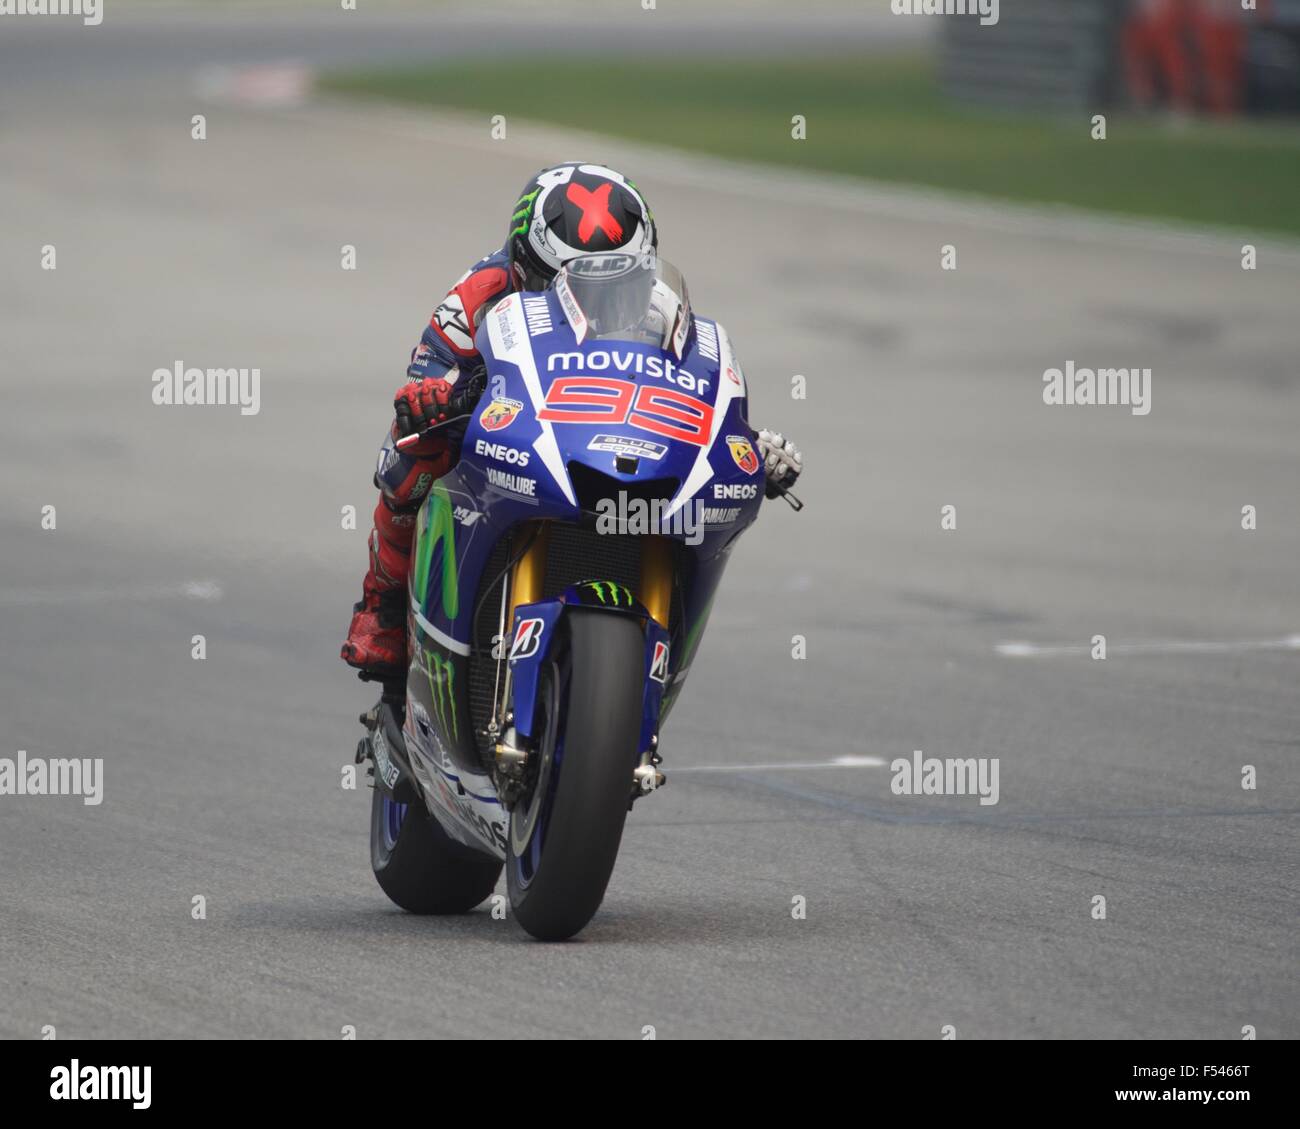 Le circuit de Sepang, en Malaisie. 25 octobre, 2015. Jorge Lorenzo au cours de la coquille Le Grand Prix moto de Malaisie Banque D'Images